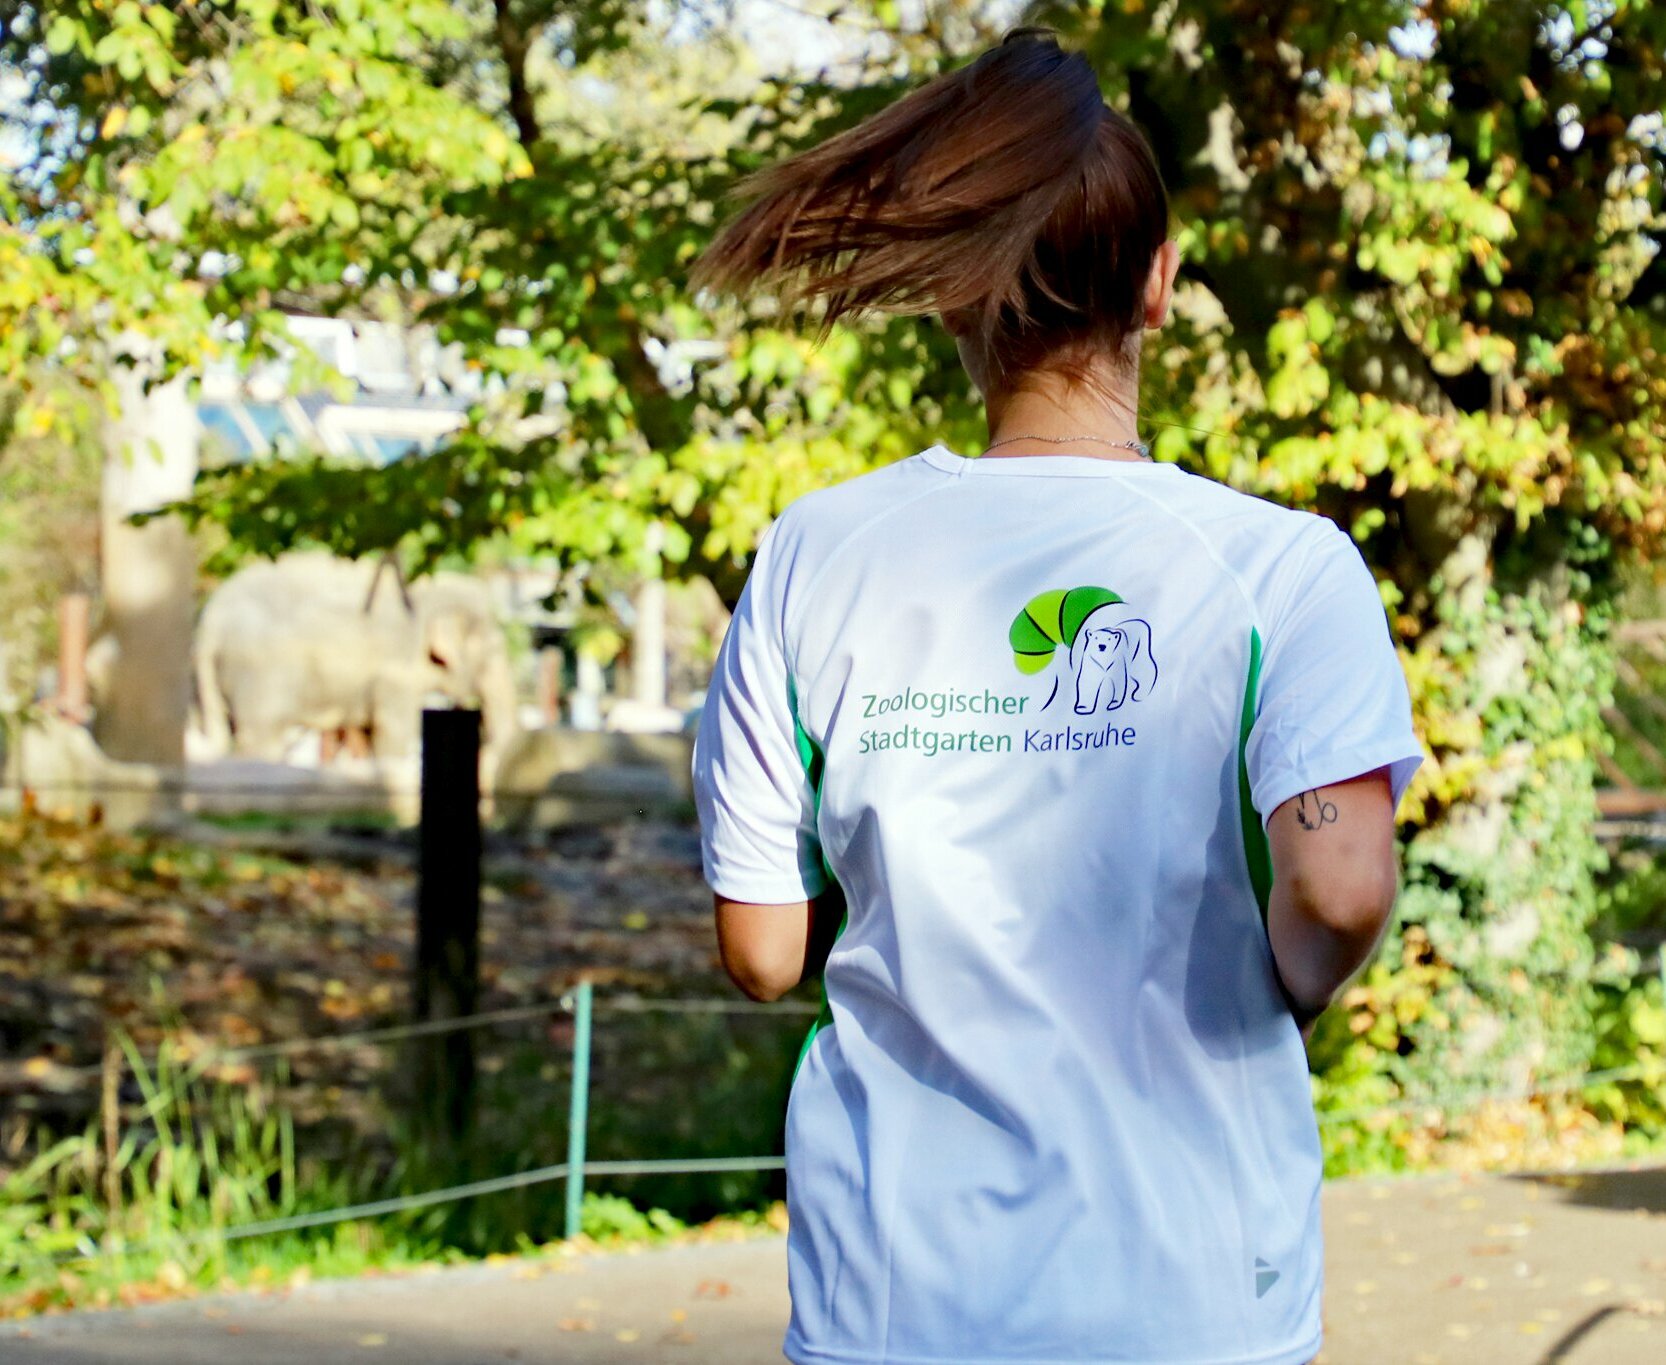 Eine Läuferin zeigt ihr T-Shirt mit der Aufschrift "Artenschutzlauf".